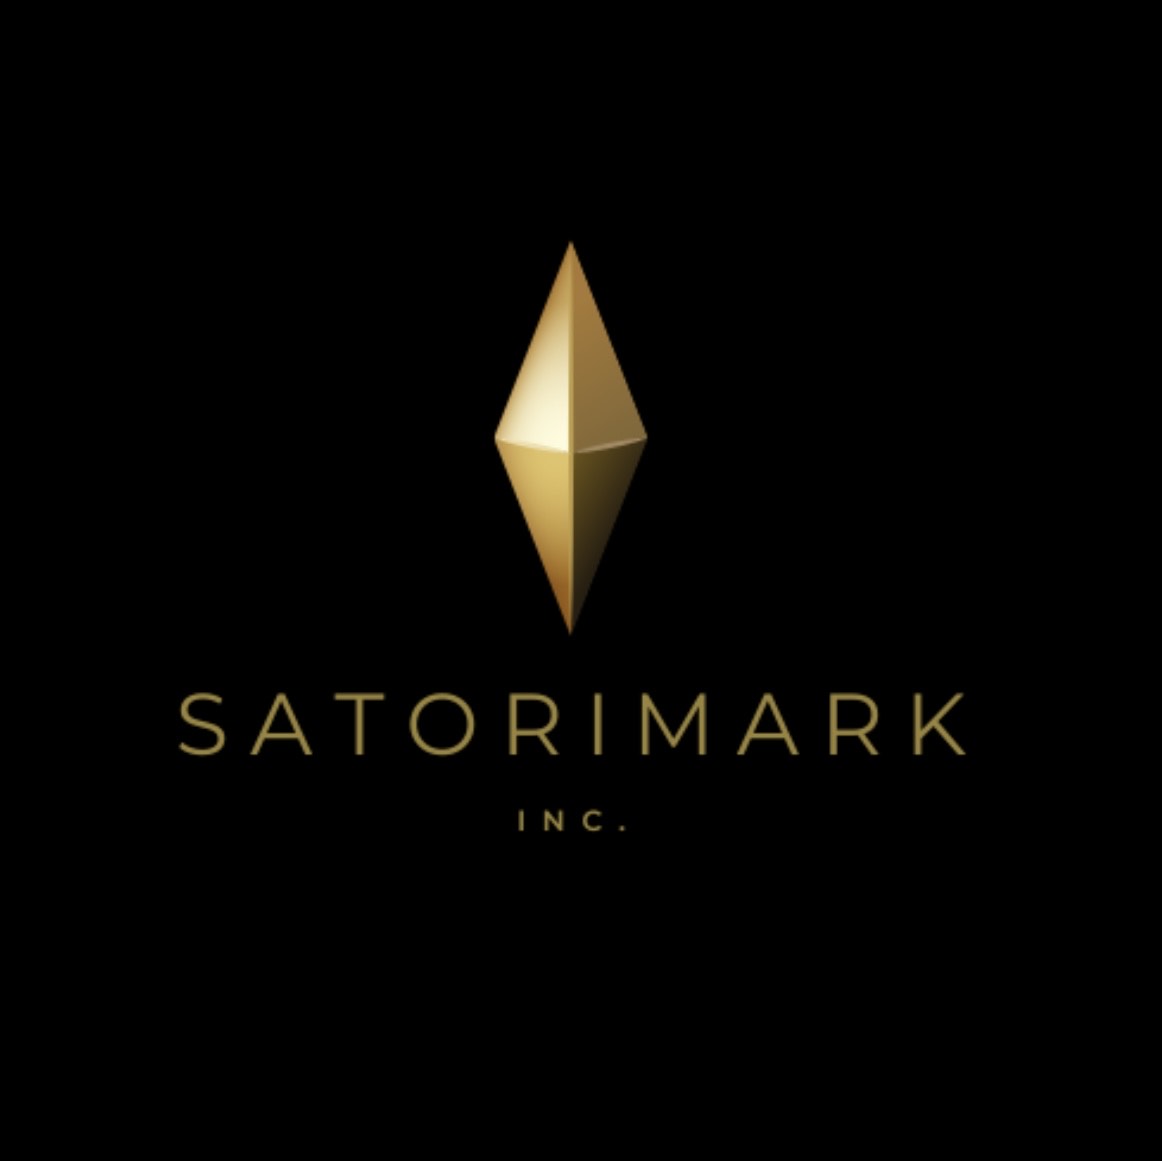 Satorimark Inc